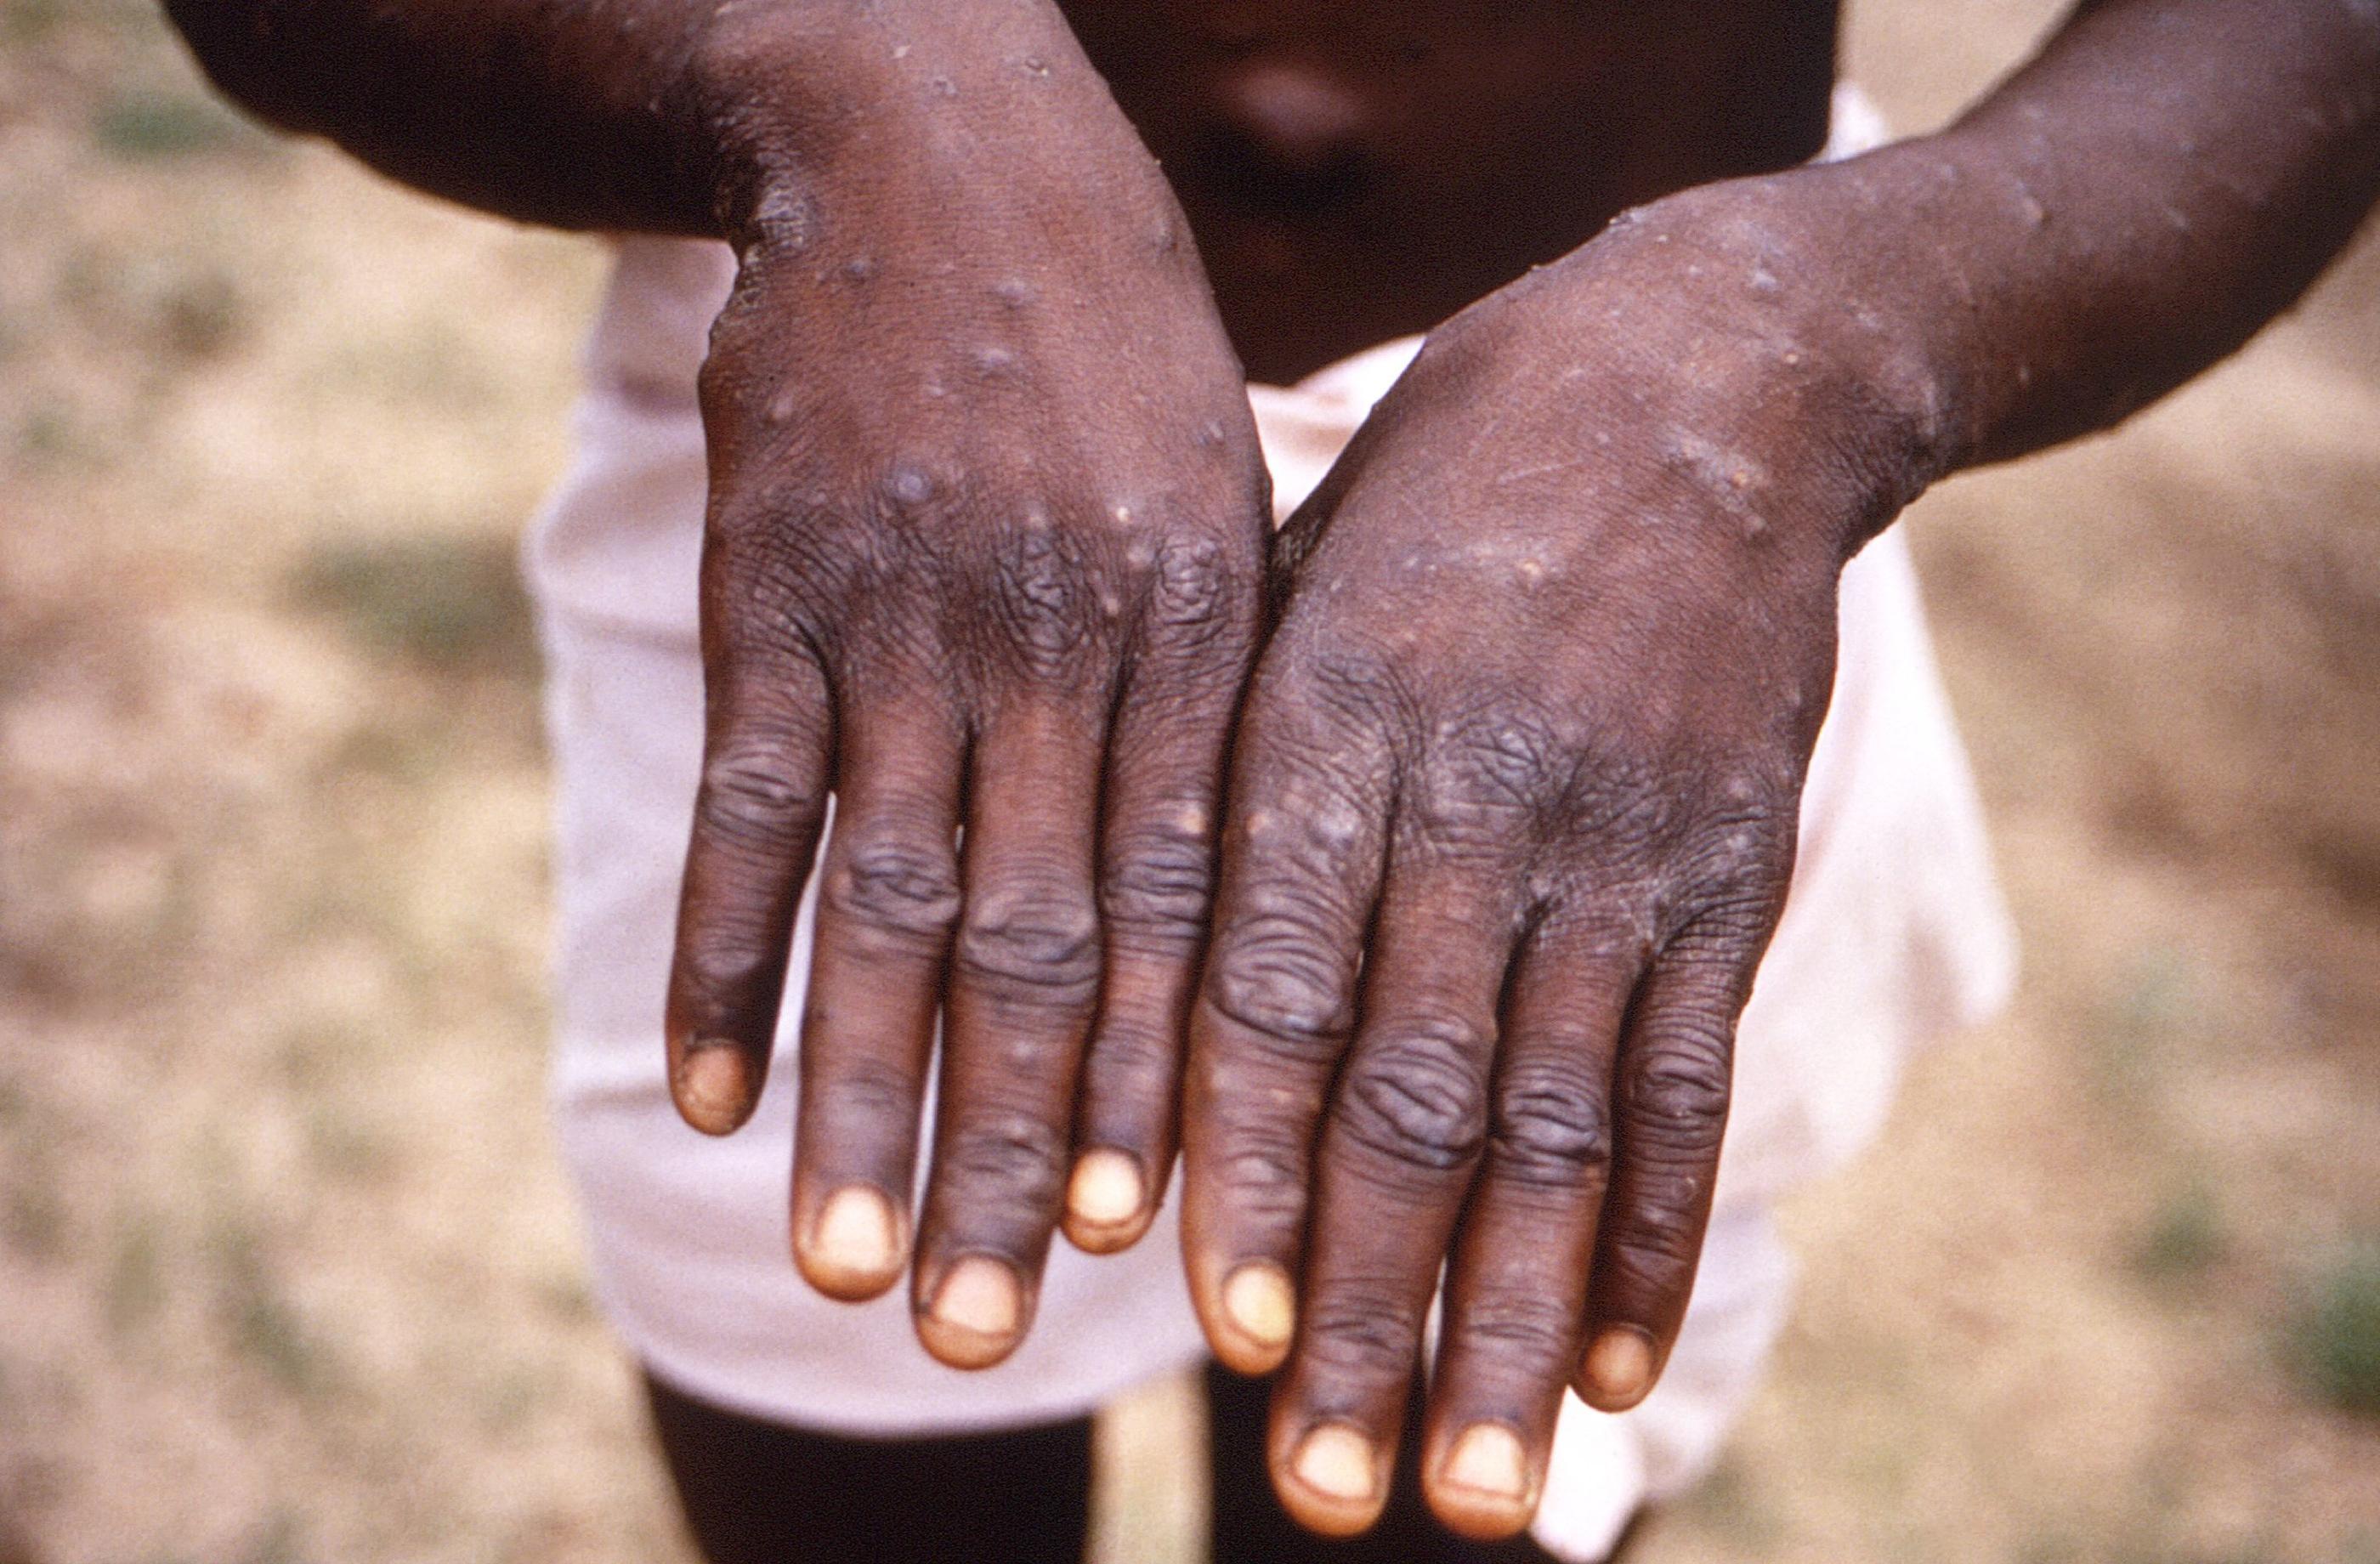 L'Organisation mondiale de la santé (OMS) avait déjà sonné l'alerte fin novembre sur cette épidémie en République démocratique du Congo (RDC). Brian W.J. Mahy / Centers for Disease Control and Prevention / AFP